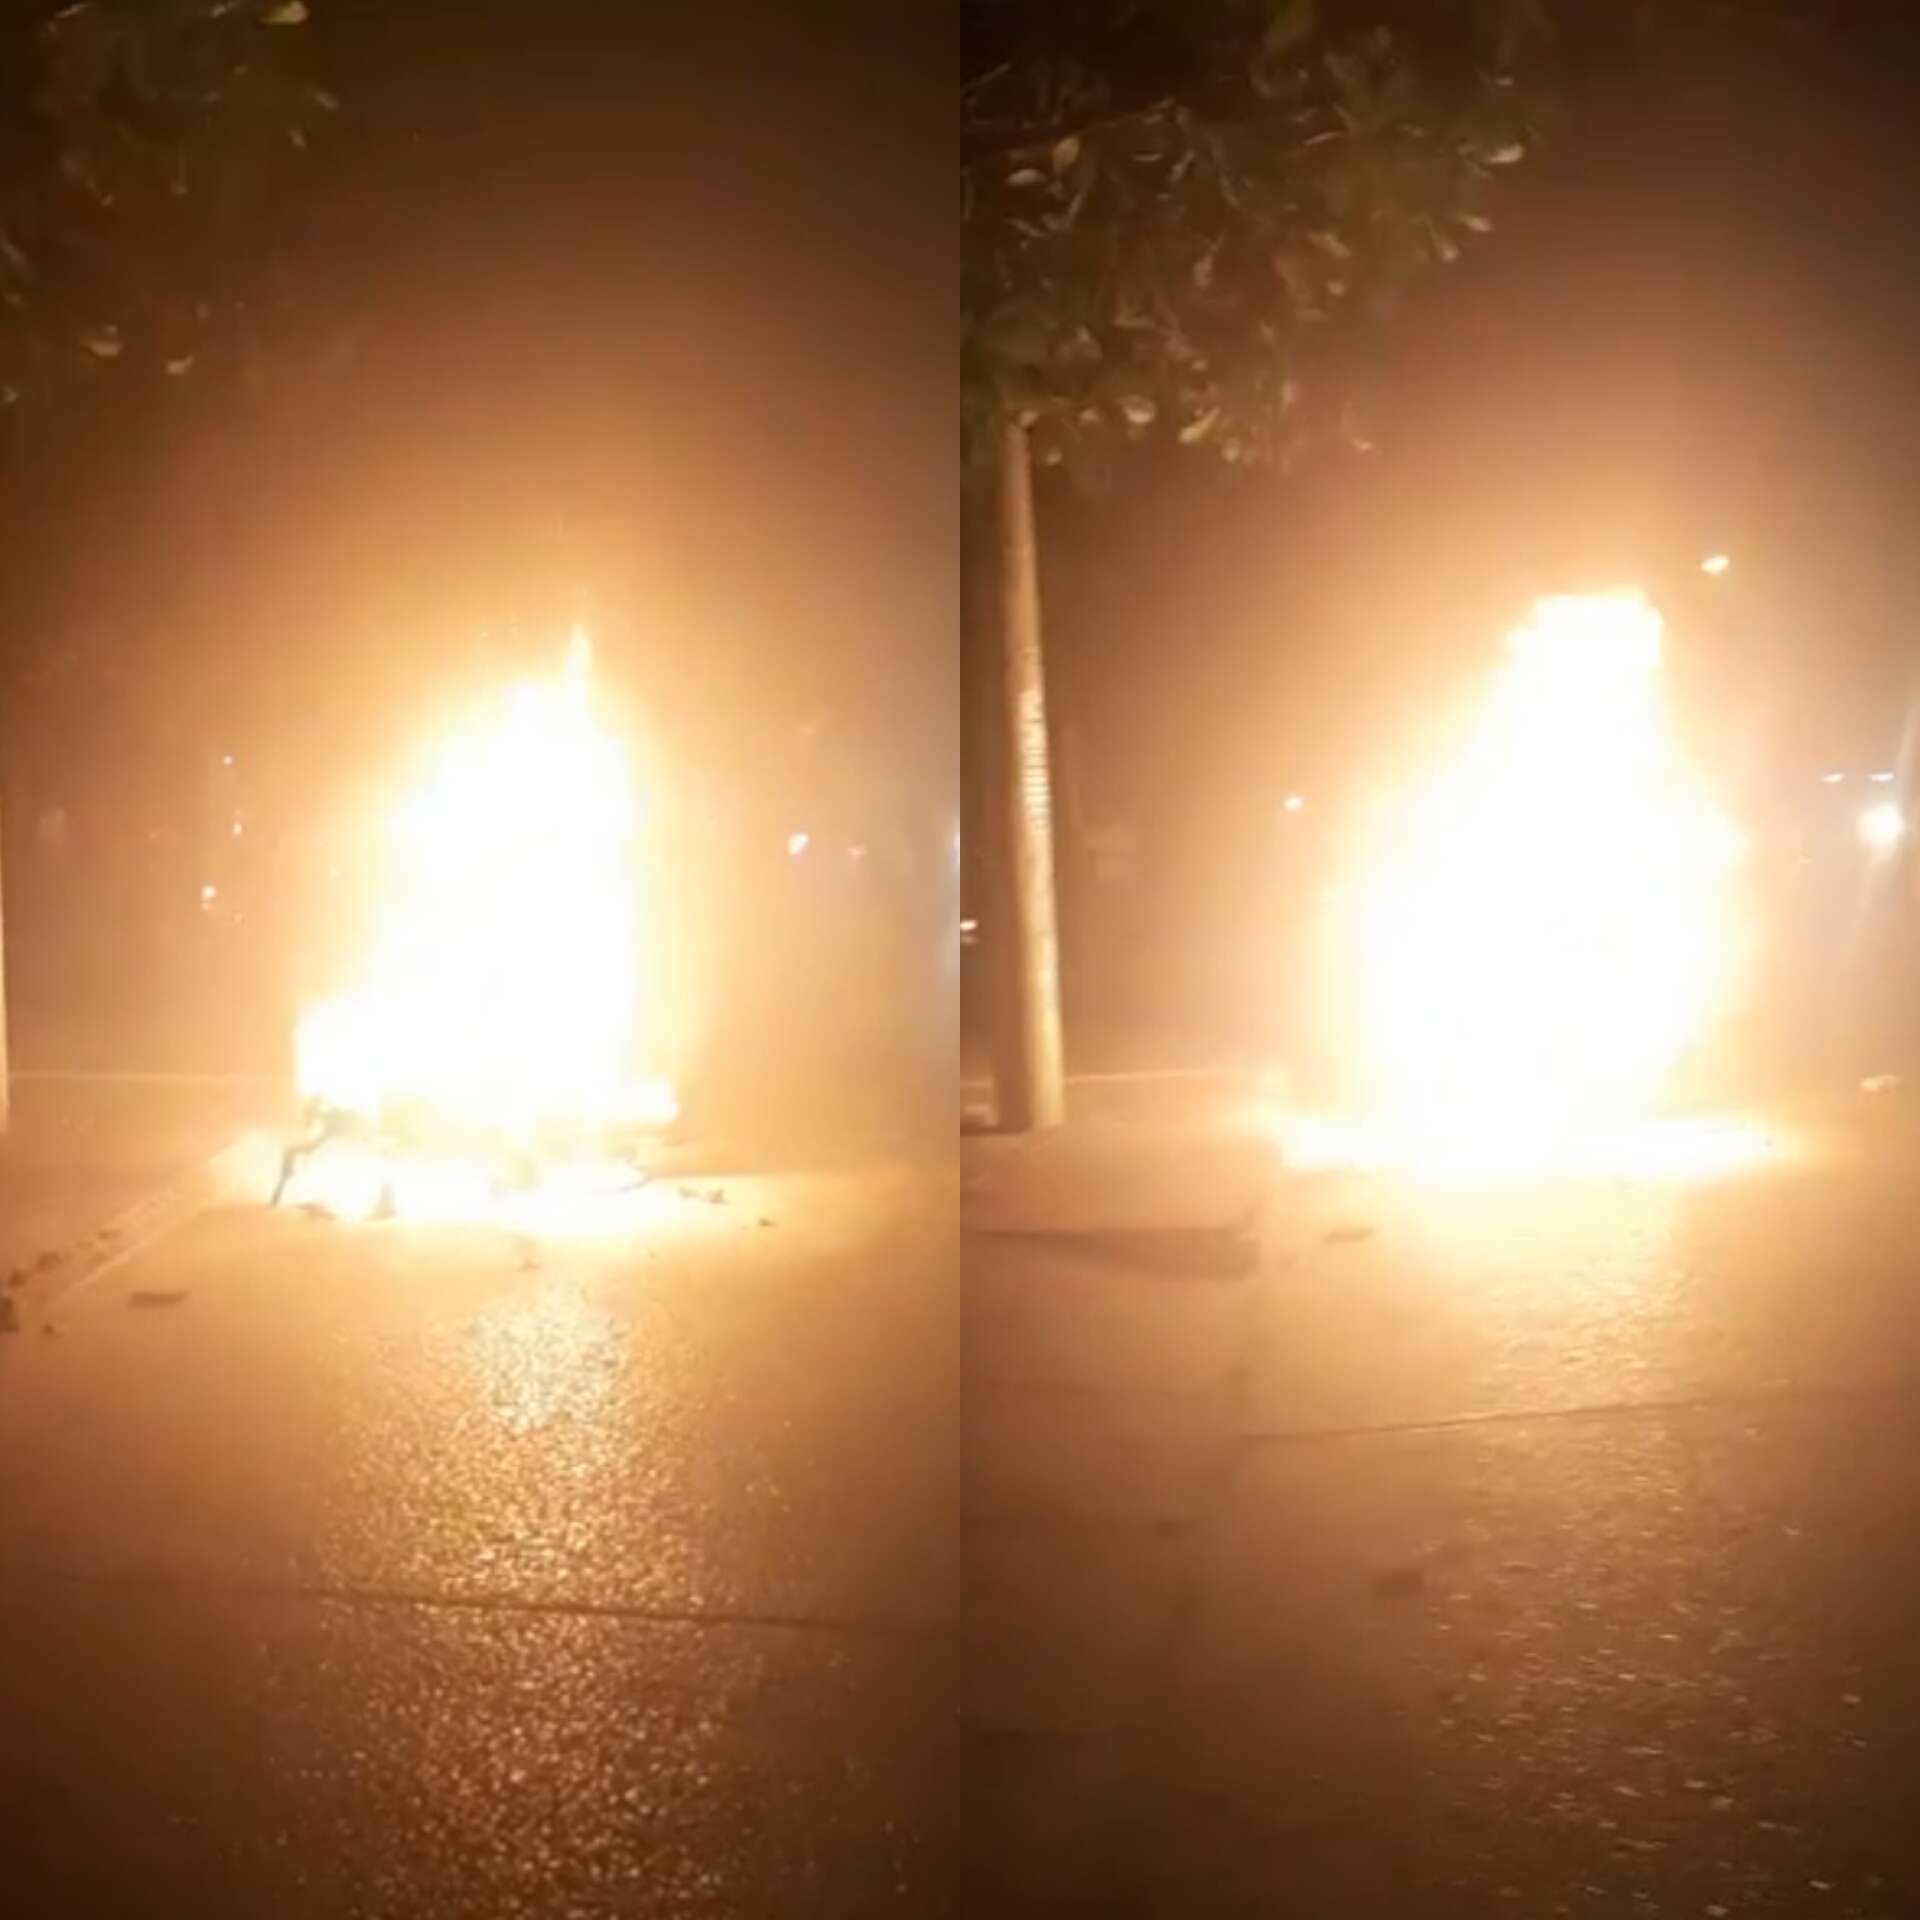 [Video] Fueron por lana y salieron trasquilados, comunidad linchó y le quemó la moto a atracadores en el sur de Montería